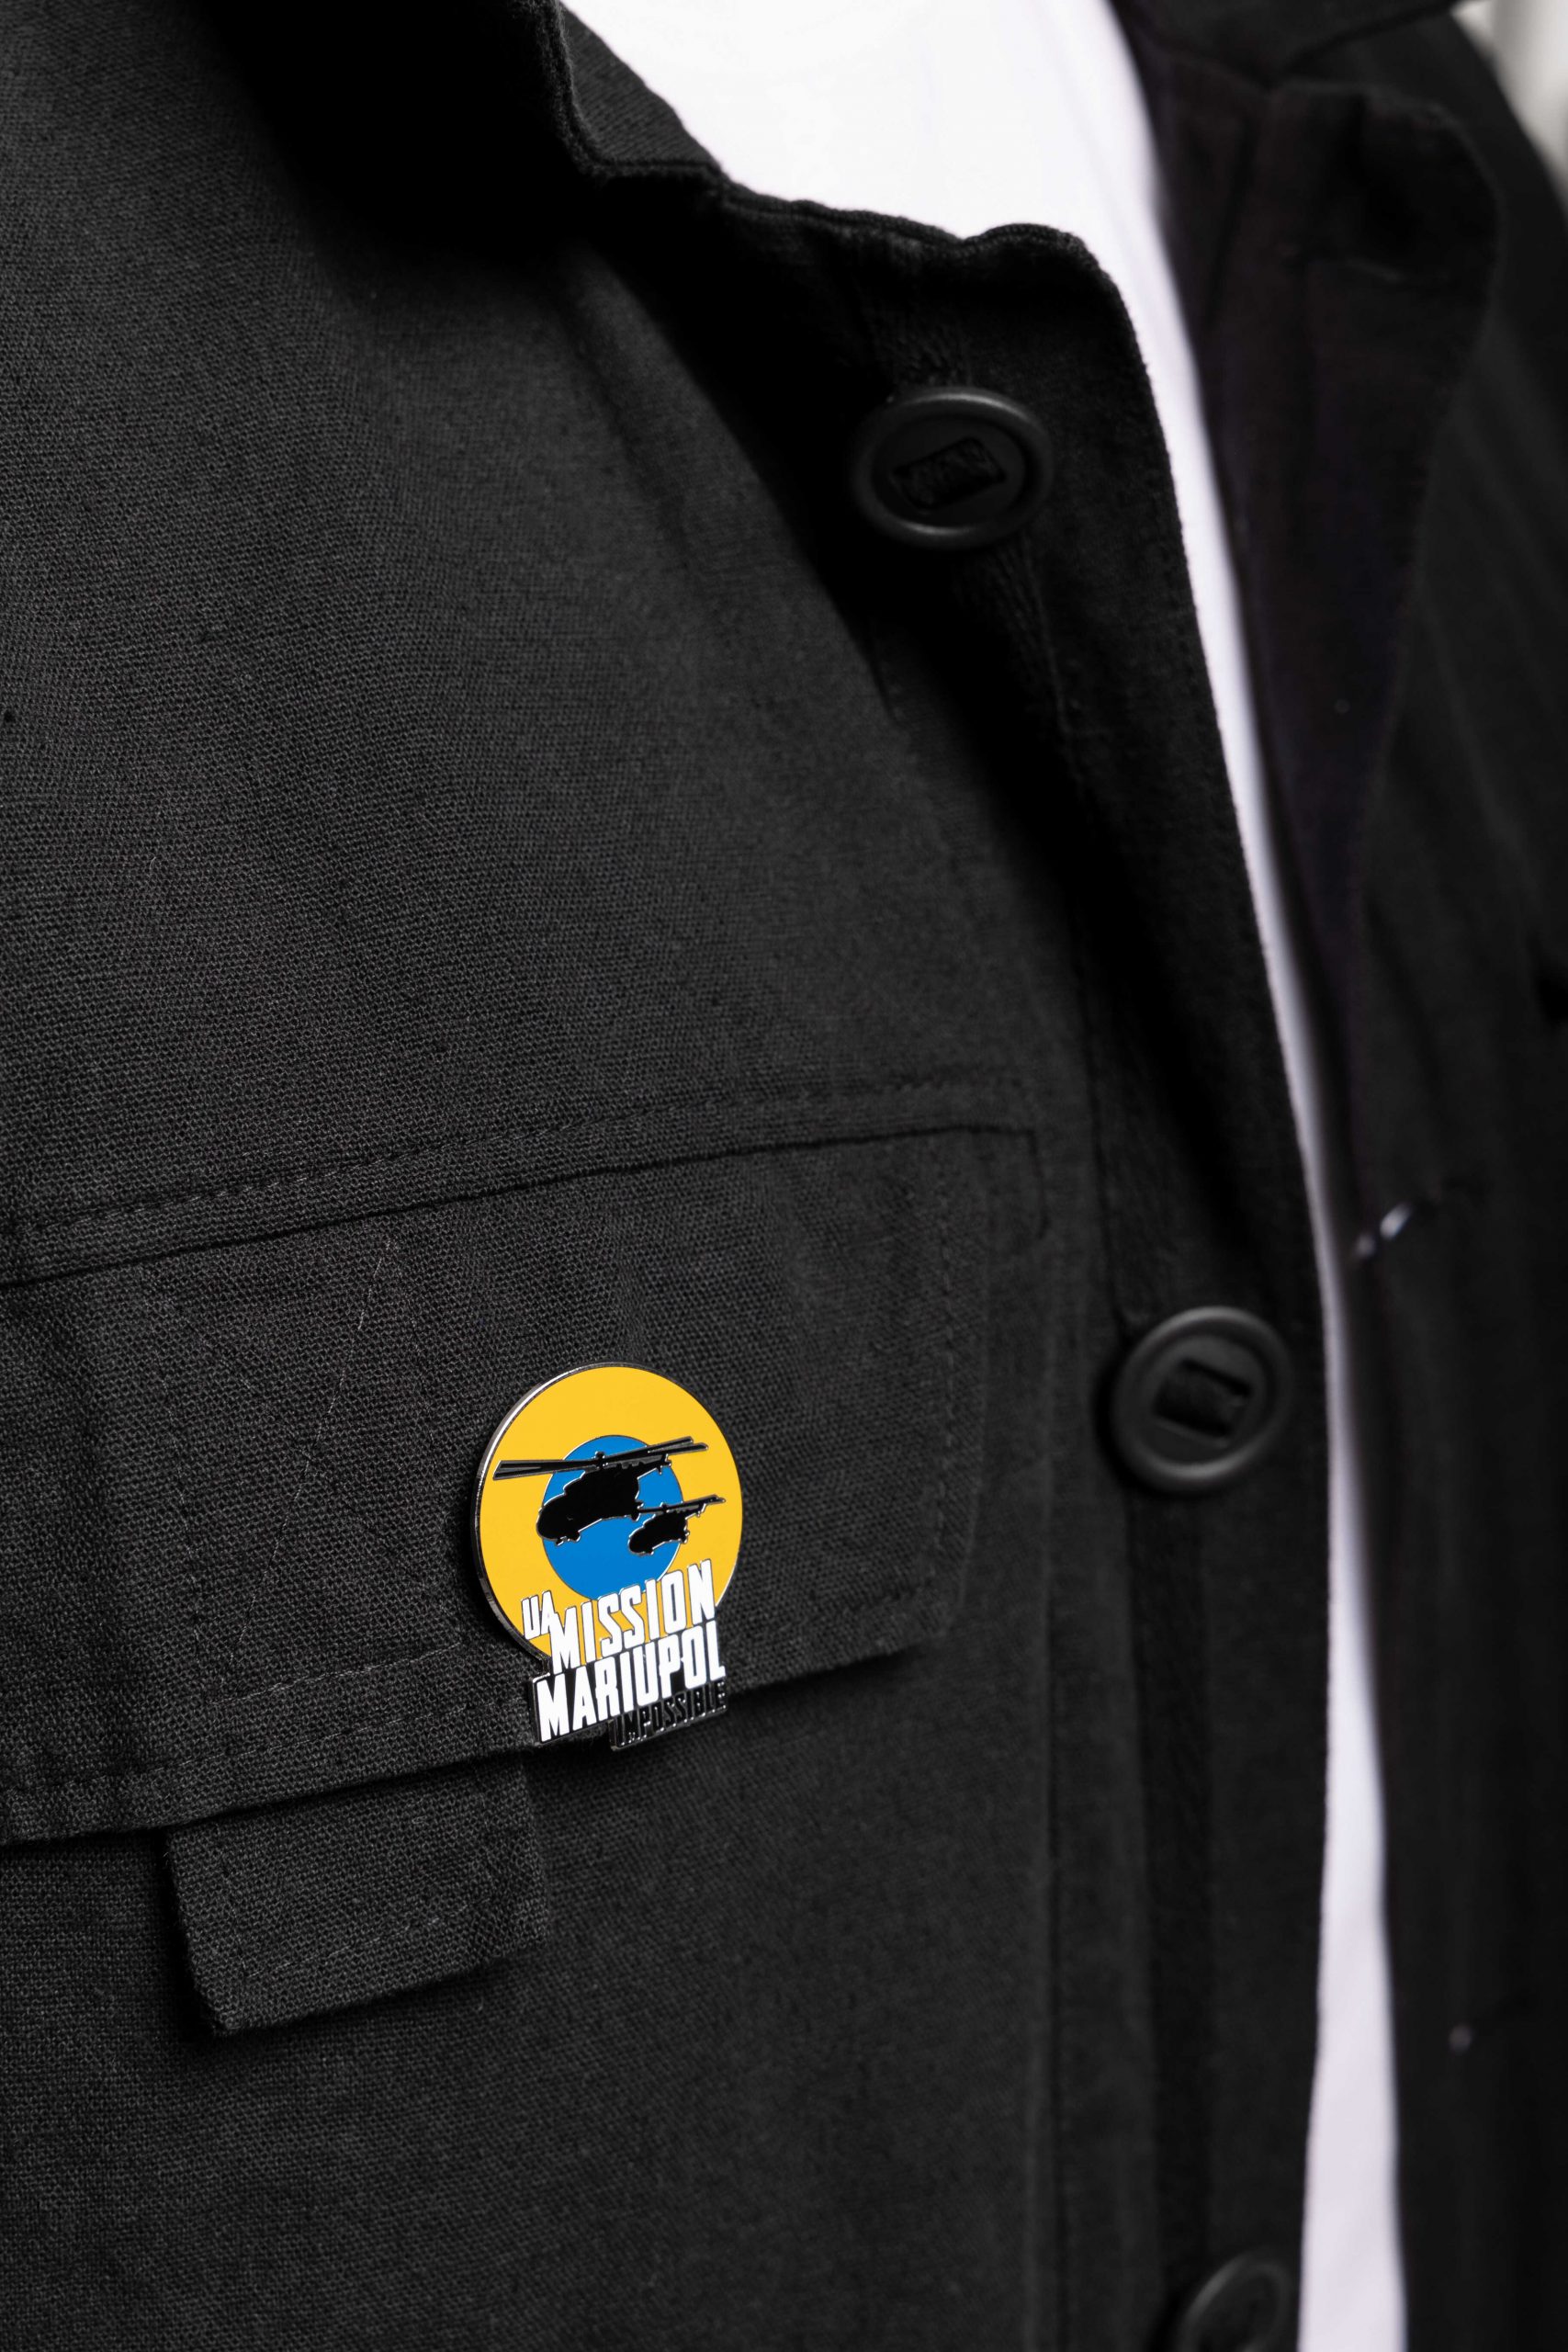 Men's Shirt-Jacket Mission Mariupol. Color black. 9.